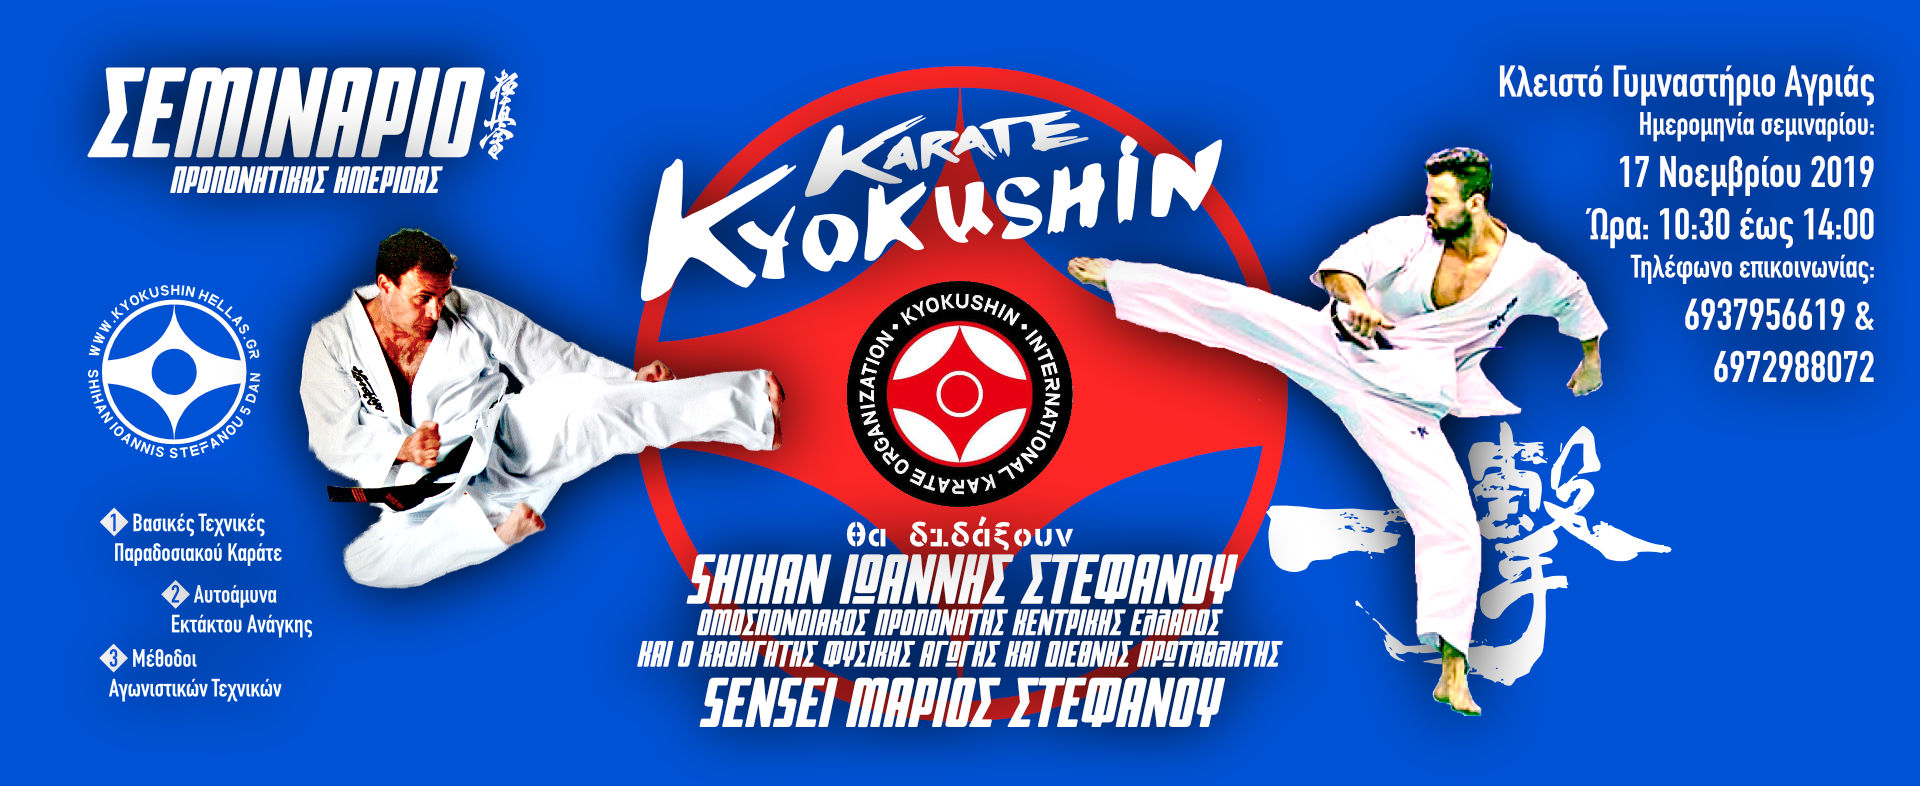 Σεμινάριο προπονητικής ημερίδας Kyokushinkai Karate